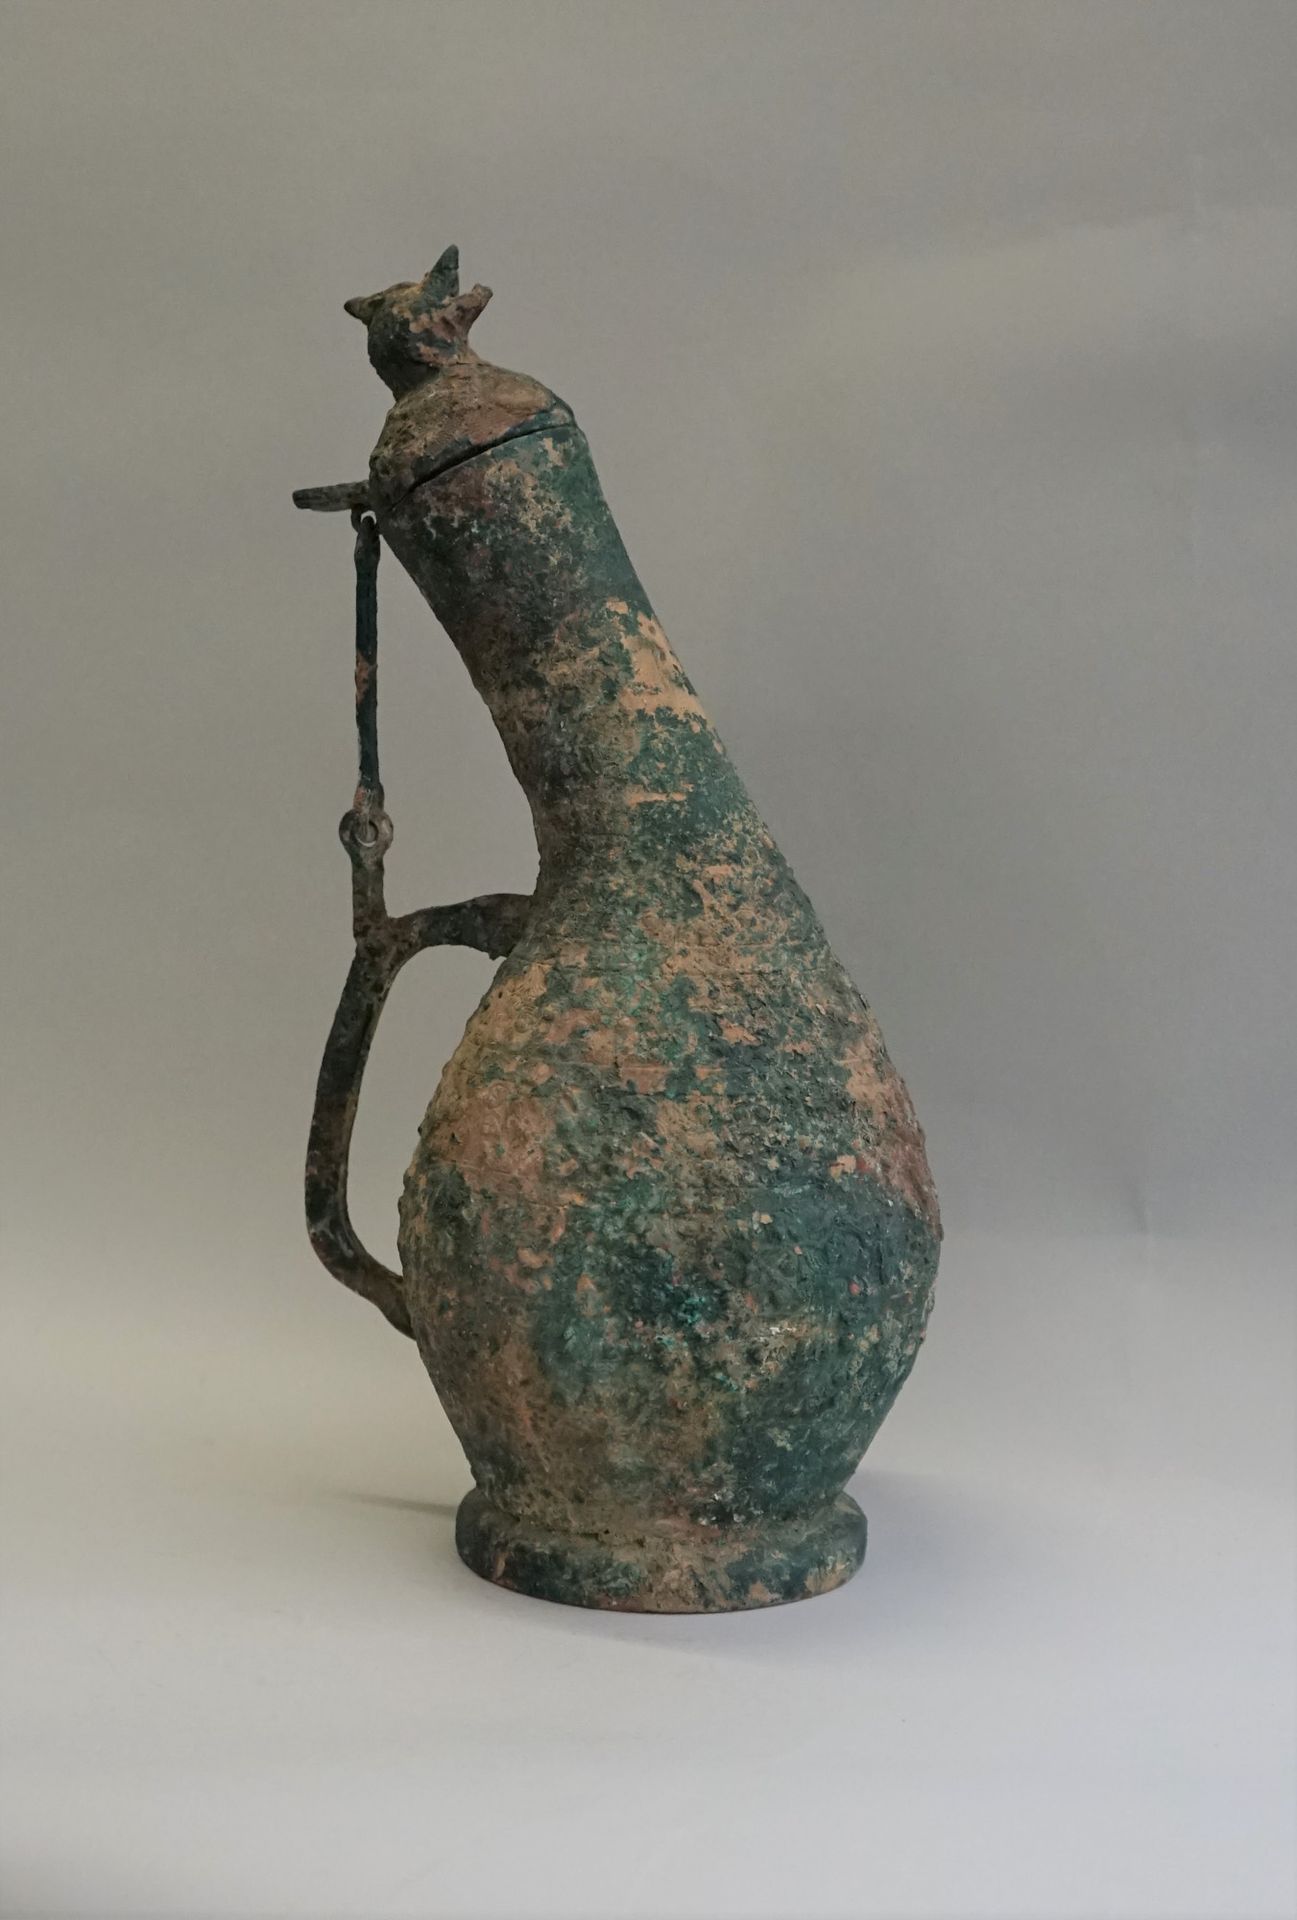 Null 献酒用的胡形花瓶。青铜器。盖子上装饰着一只鸟。罕见的形式。

中国战国时期的风格。

高：35厘米。